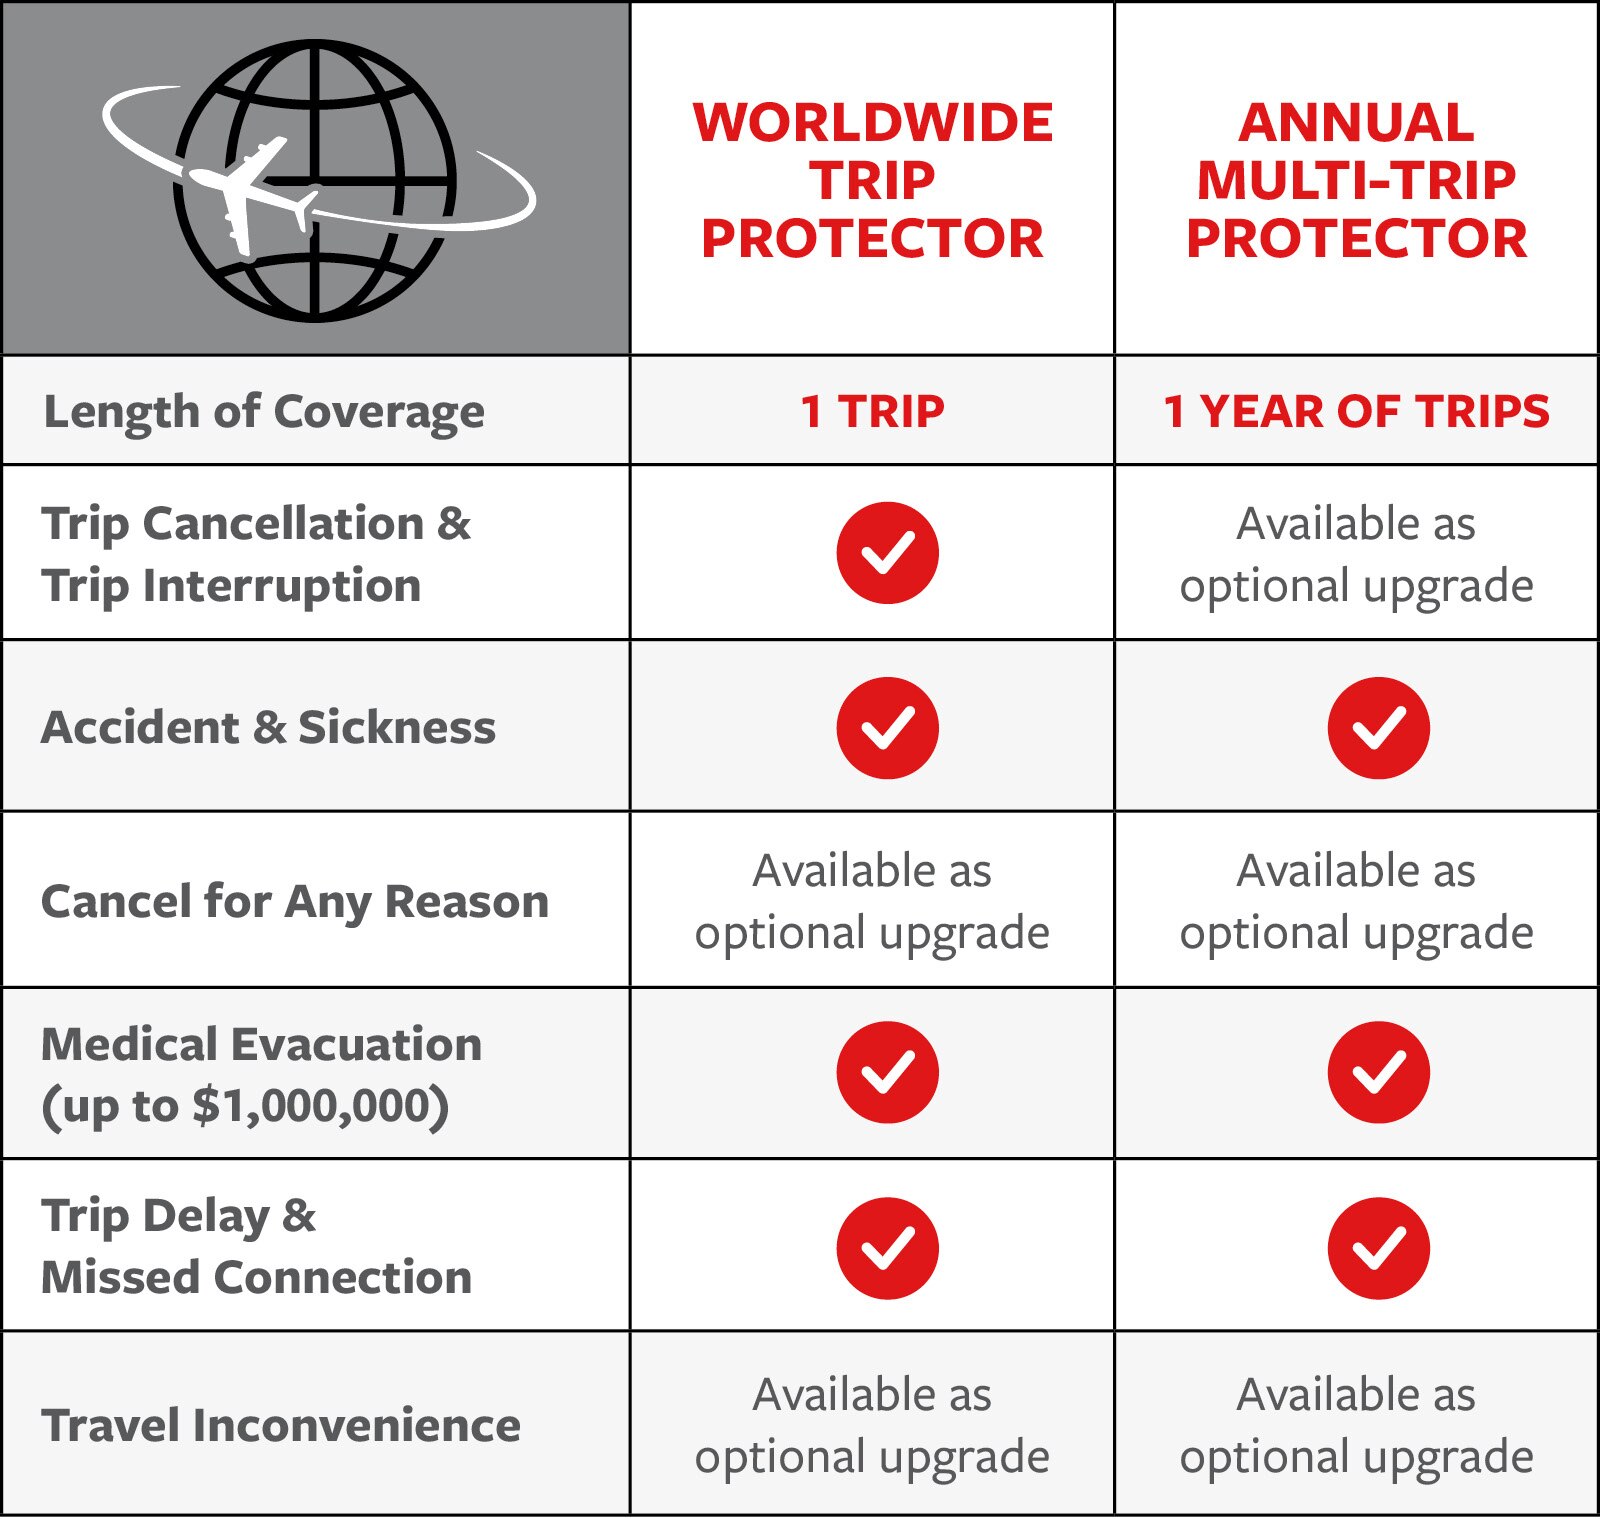 全球旅行保护器VS年度多行程保护器，查看下面的详细信息